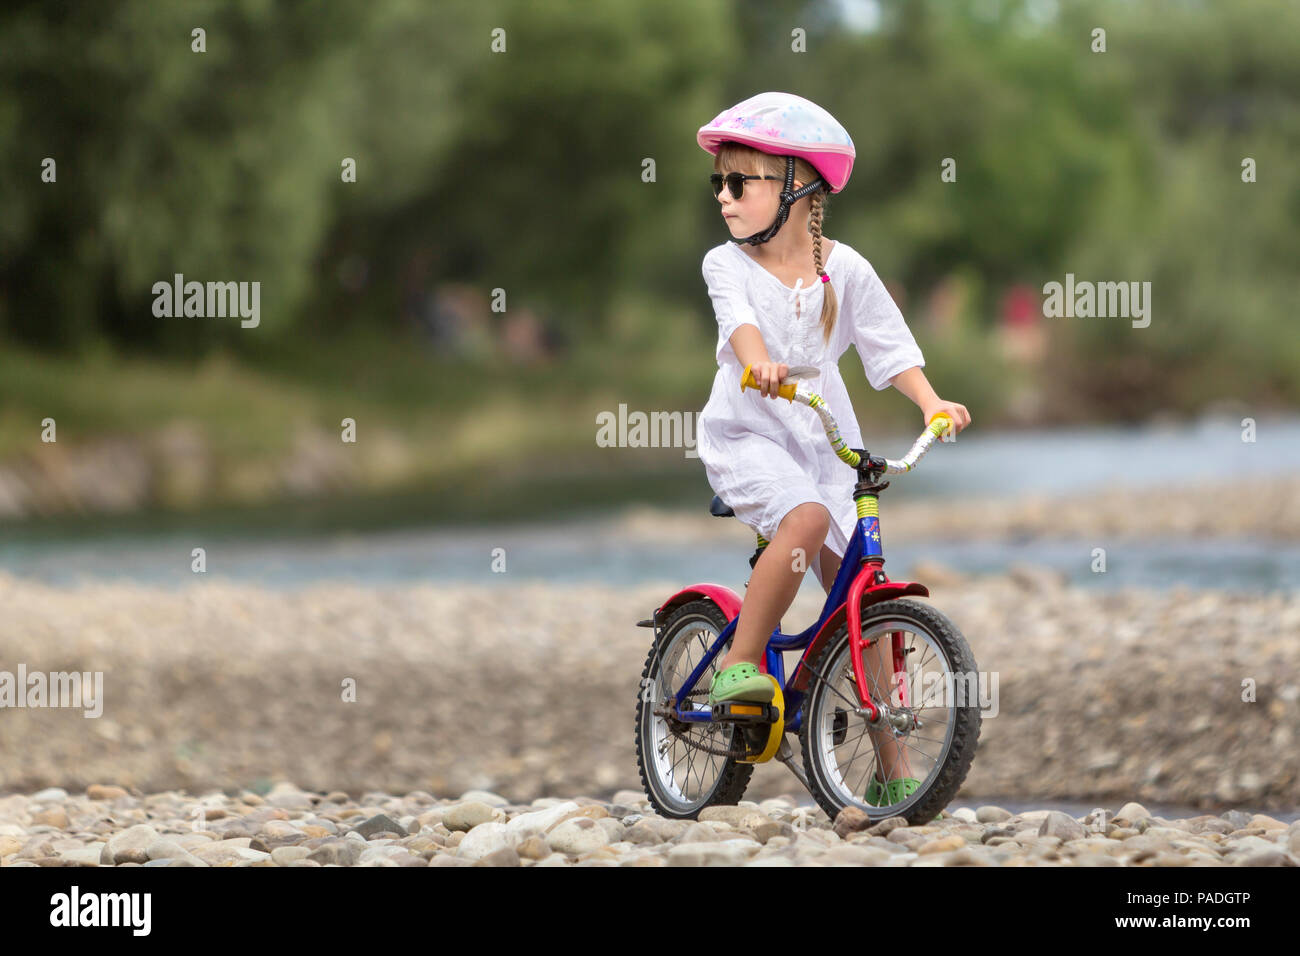 Linda jovencita en ropa blanca, gafas de sol con largas trenzas llevar casco de seguridad rosa montando bicicleta infantil de guijarros de río verde borrosa Foto de stock